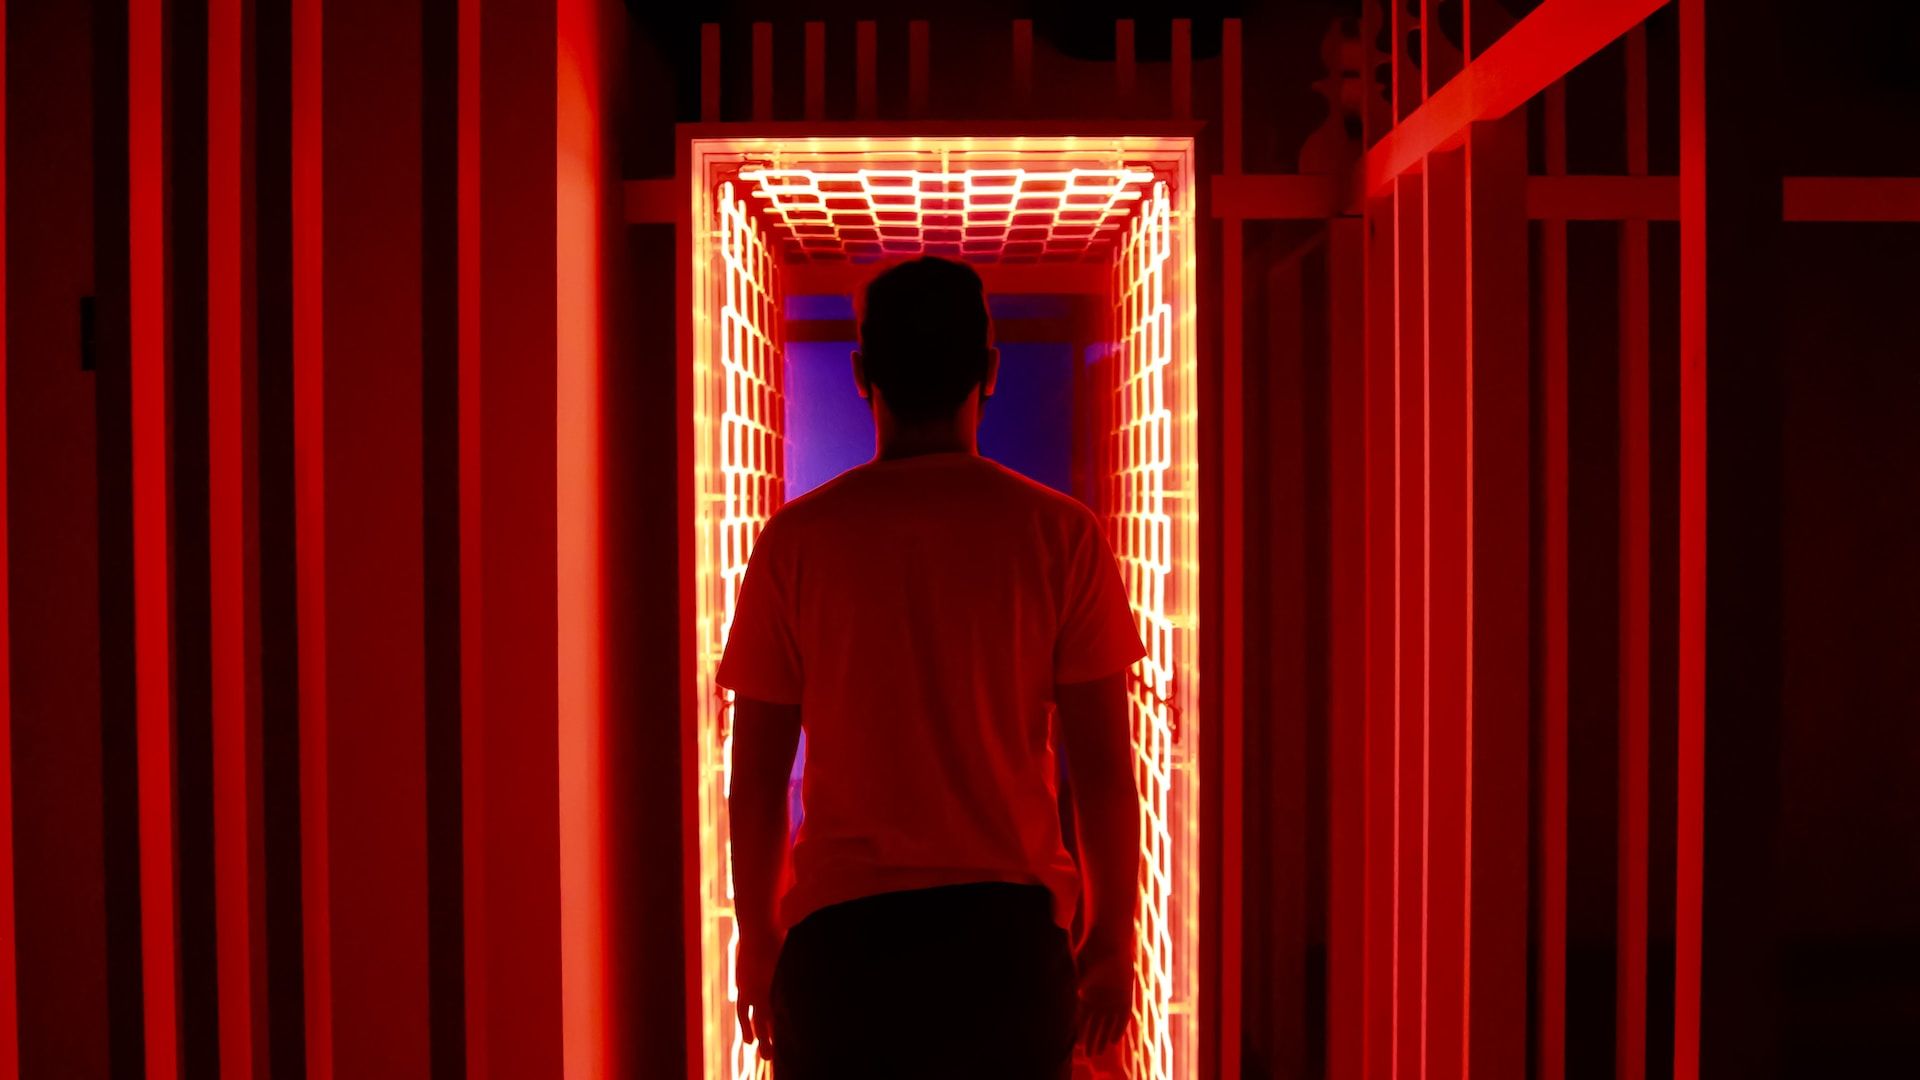 Un homme entre dans un couloir éclairé par des néons rouges - Photo by Nathana Rebouças on https://unsplash.com/fr/photos/homme-en-t-shirt-a-col-rond-blanc-debout-devant-le-rideau-de-fenetre-rouge-TtB2gGKKj2c